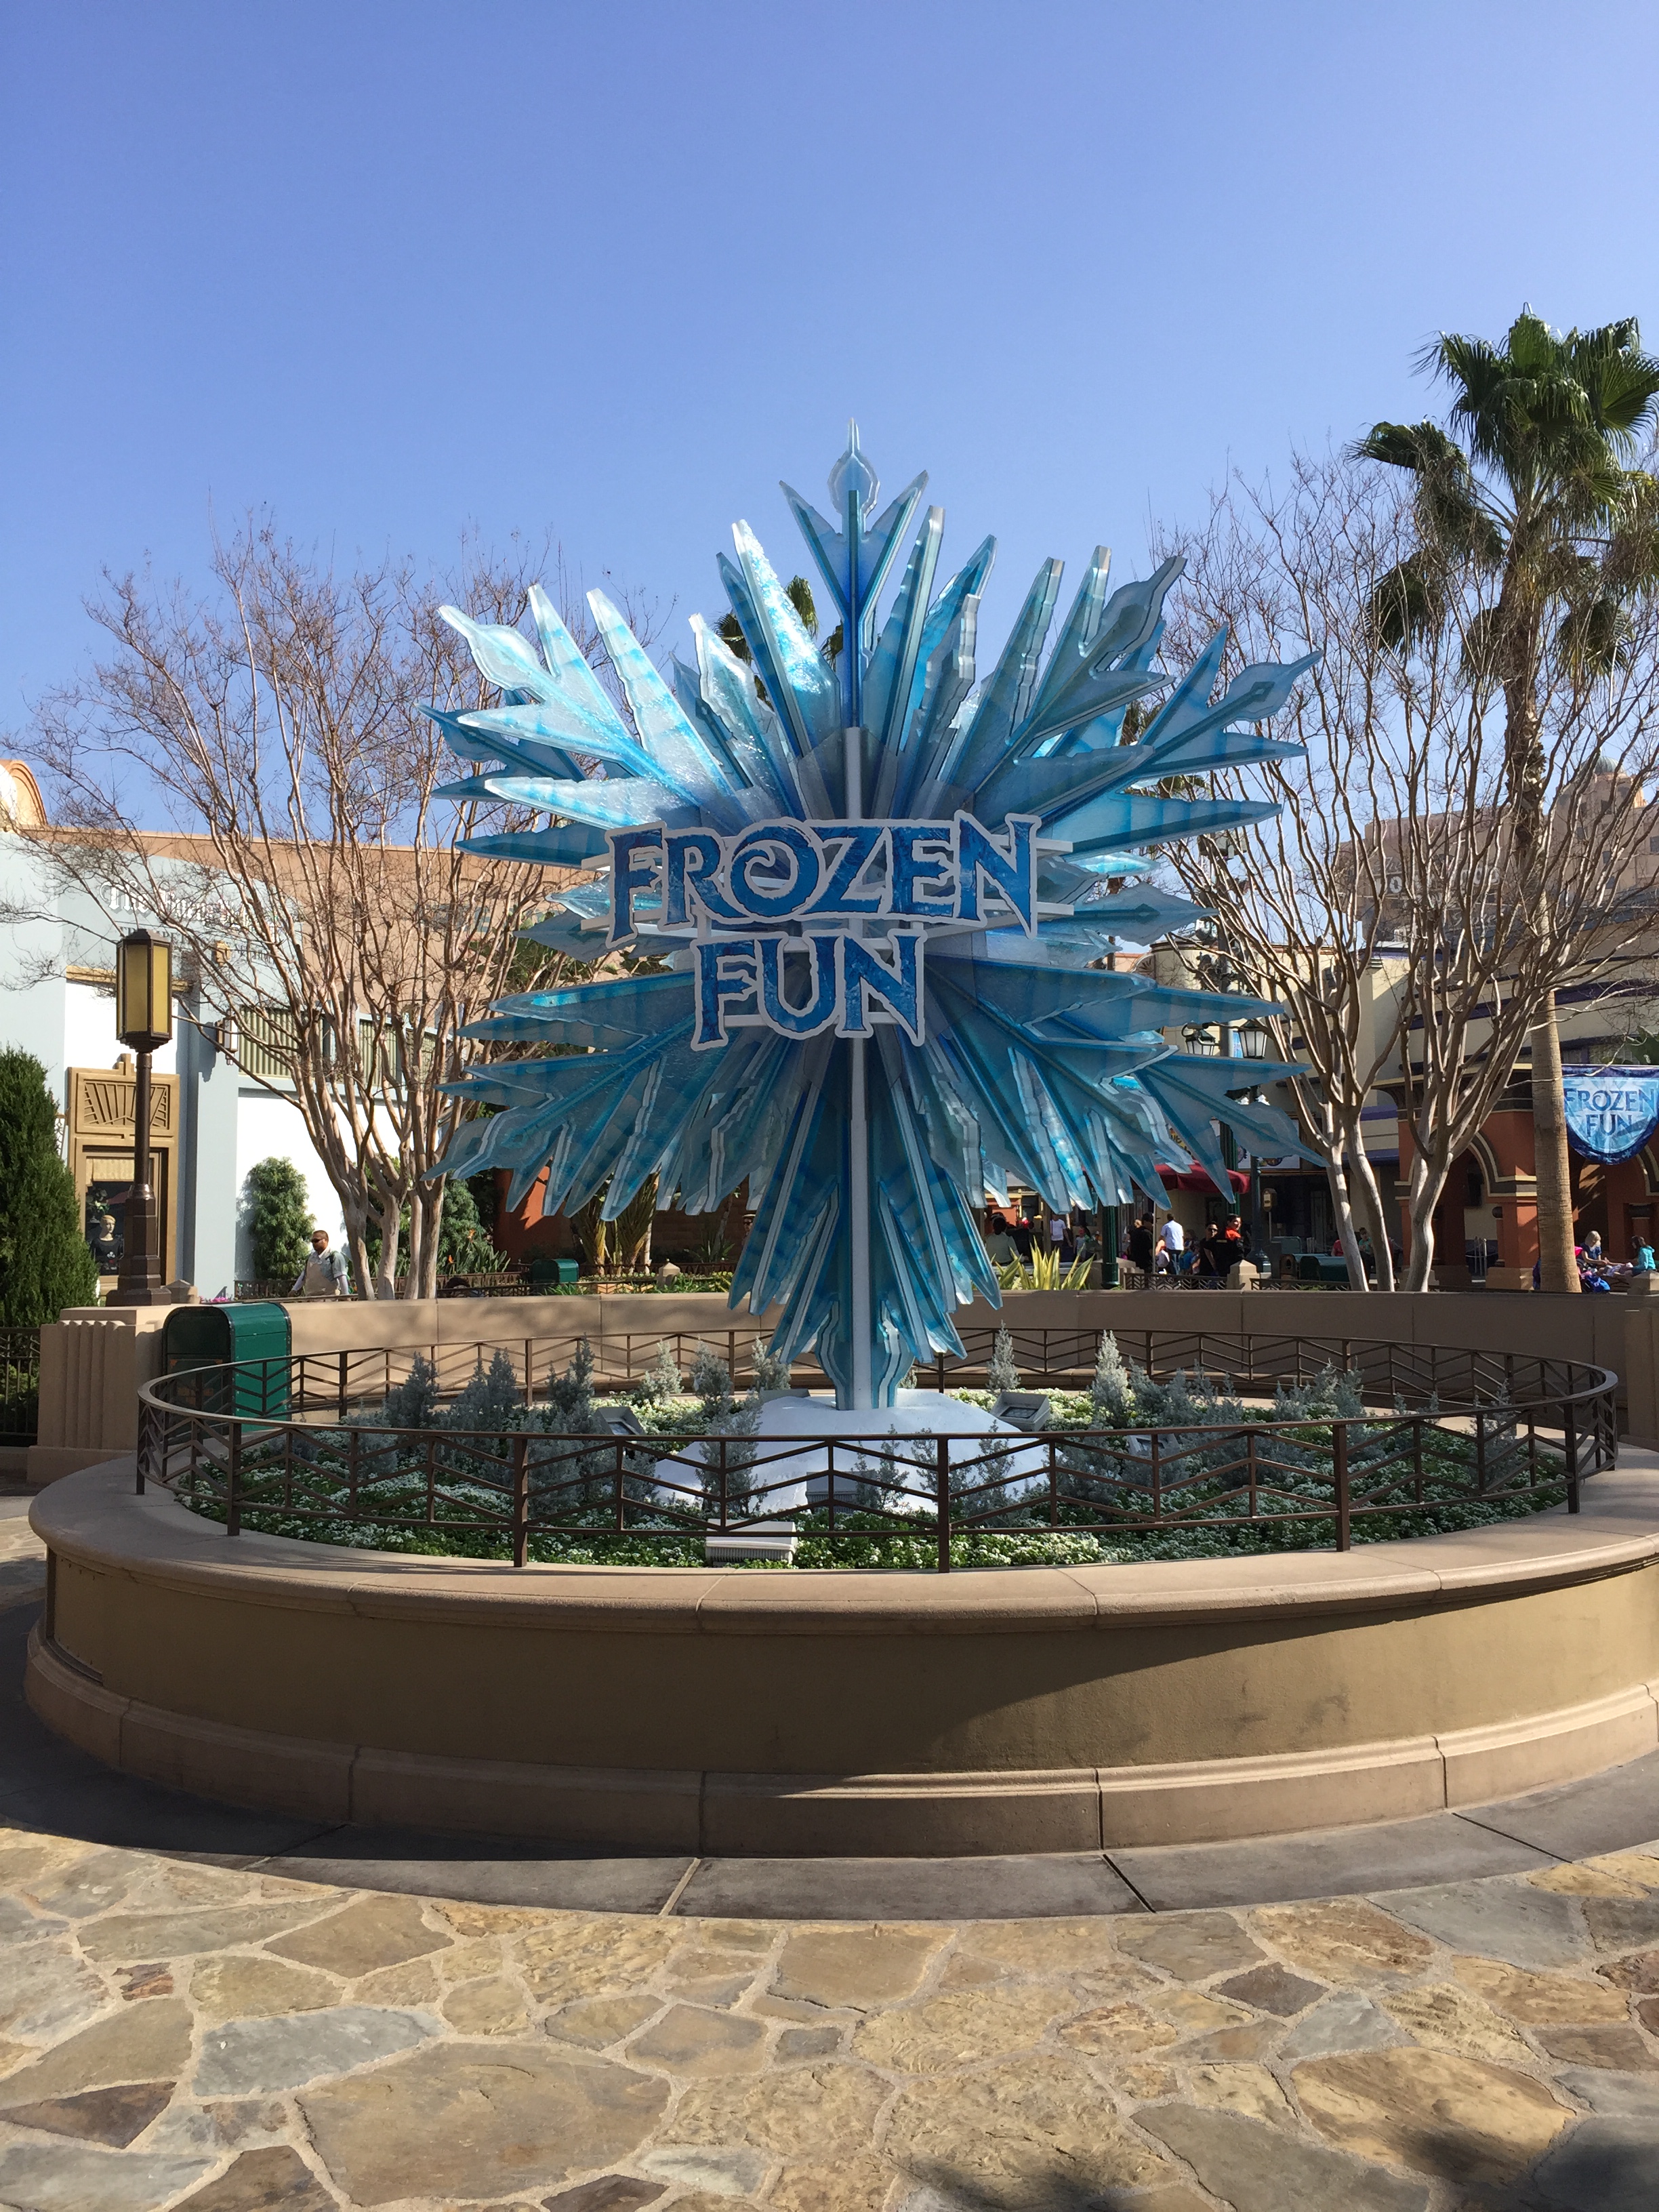 Frozen Fun!